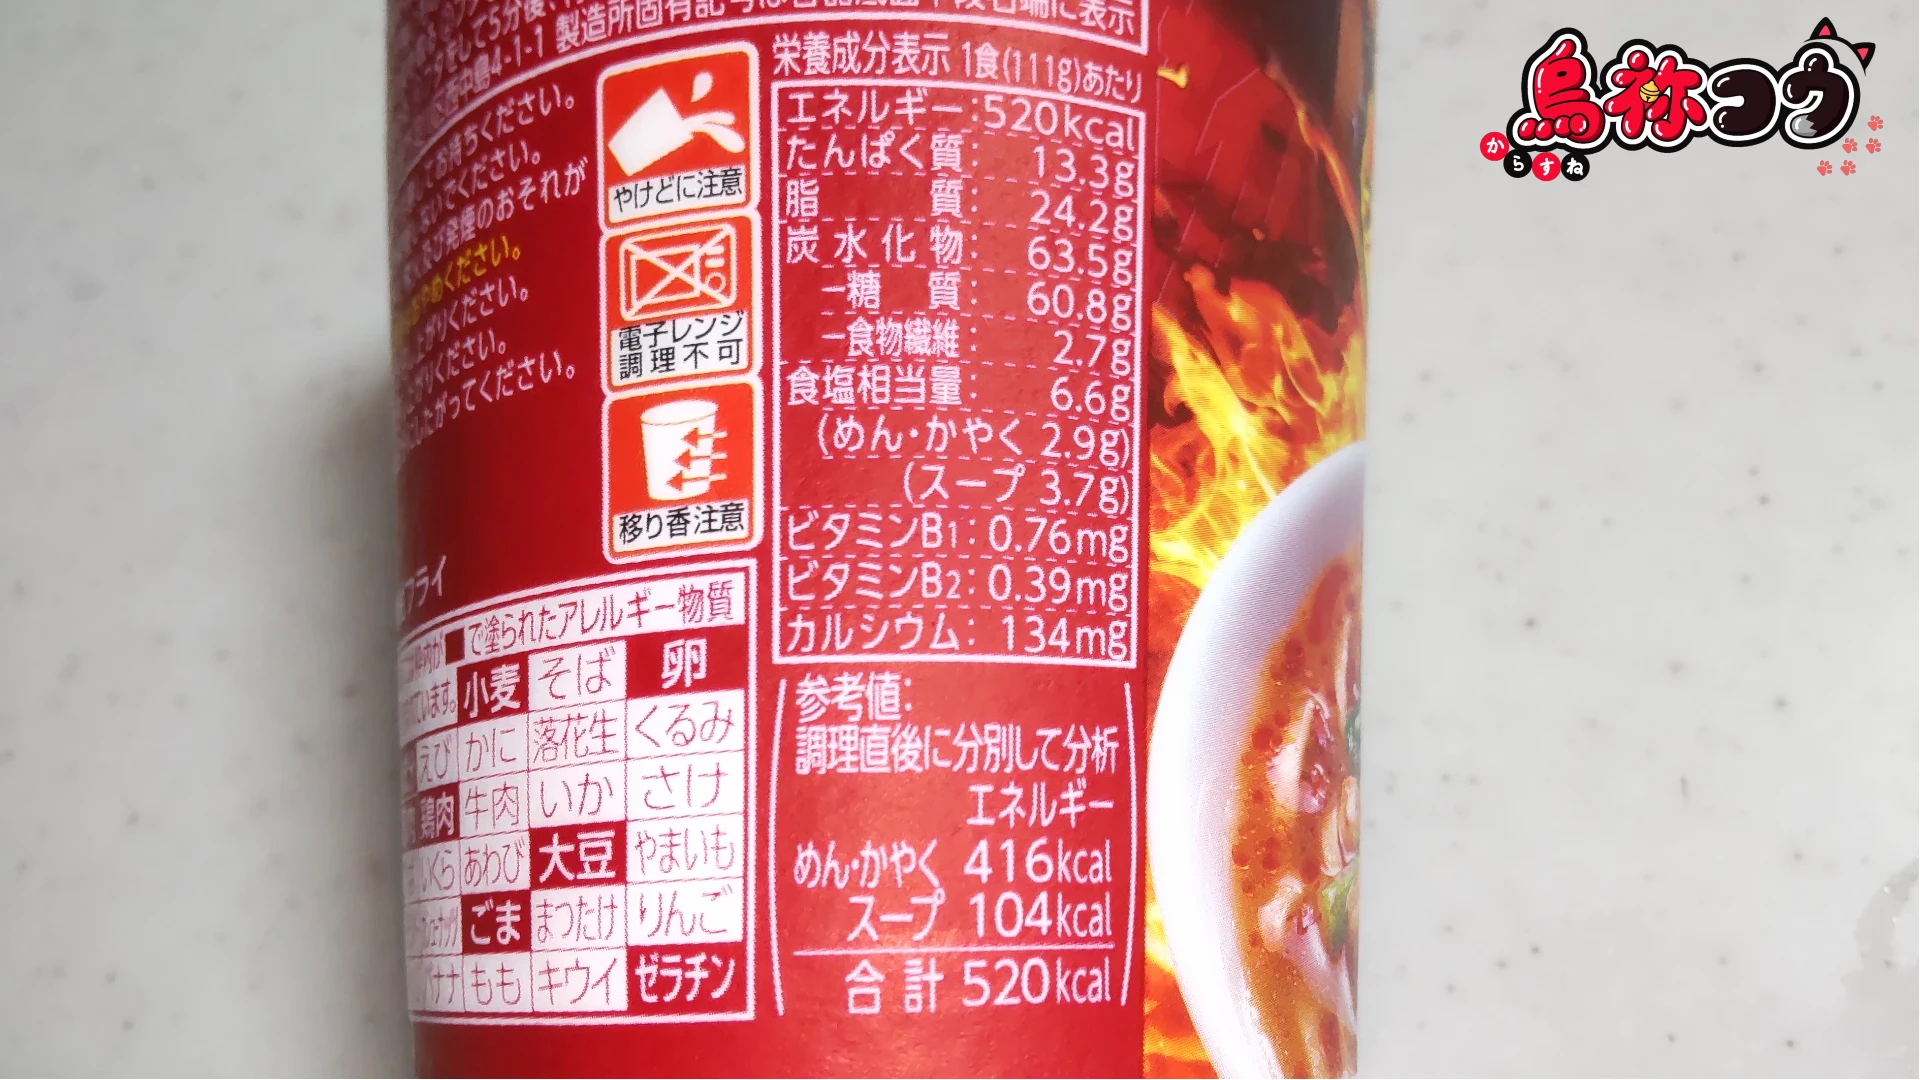 ファミマルの味仙 台湾ラーメンの栄養成分表示です